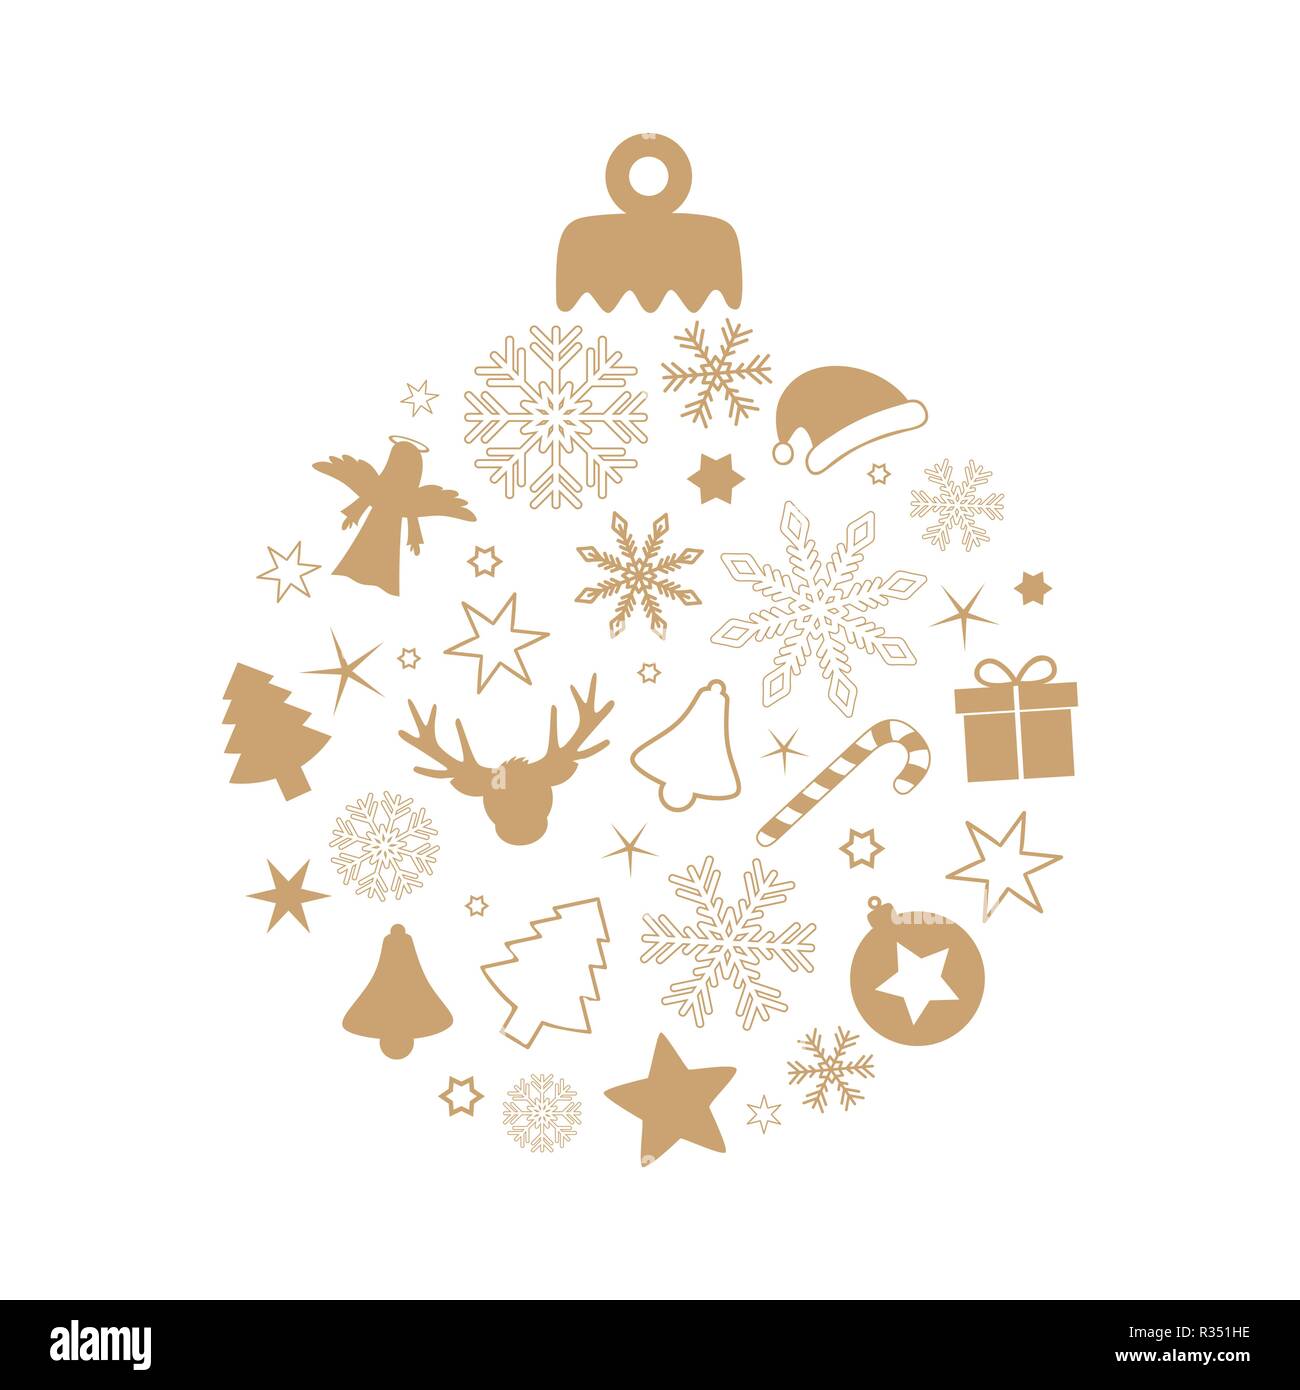 Christmas Ball mit verschiedenen Symbolen rentier Schneeflocke Stern tanne Zuckerstange Geschenk Engel Glocke auf weißem Hintergrund Stock Vektor